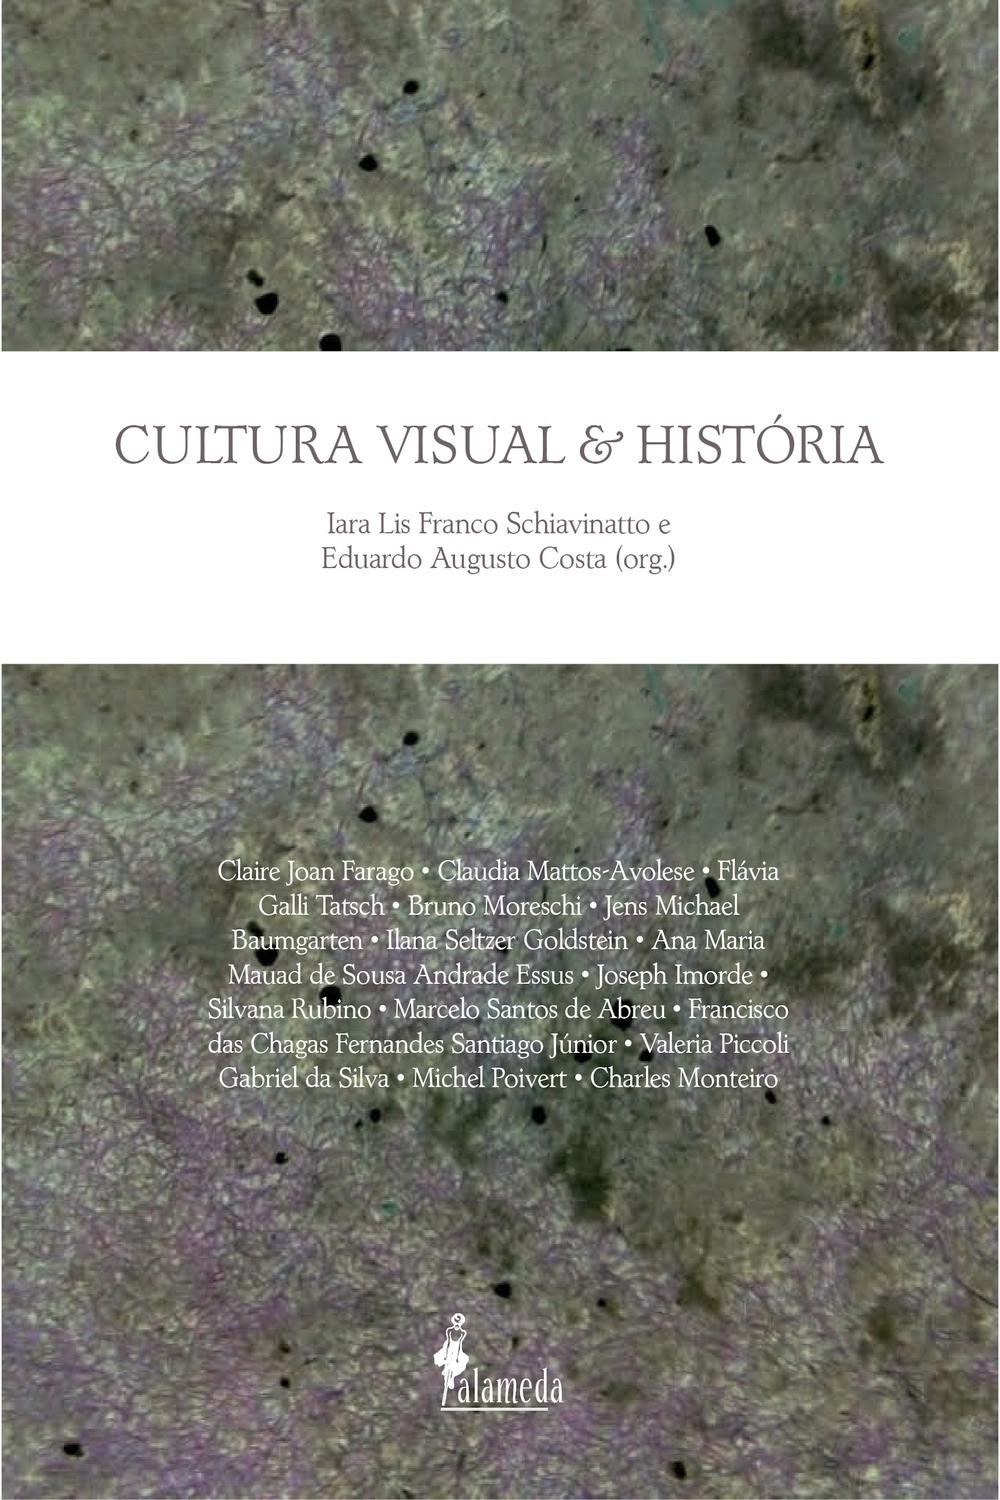 Cultura Visual e História - Iara Lins Franco Shiavinatto, Eduardo Augusto Costa